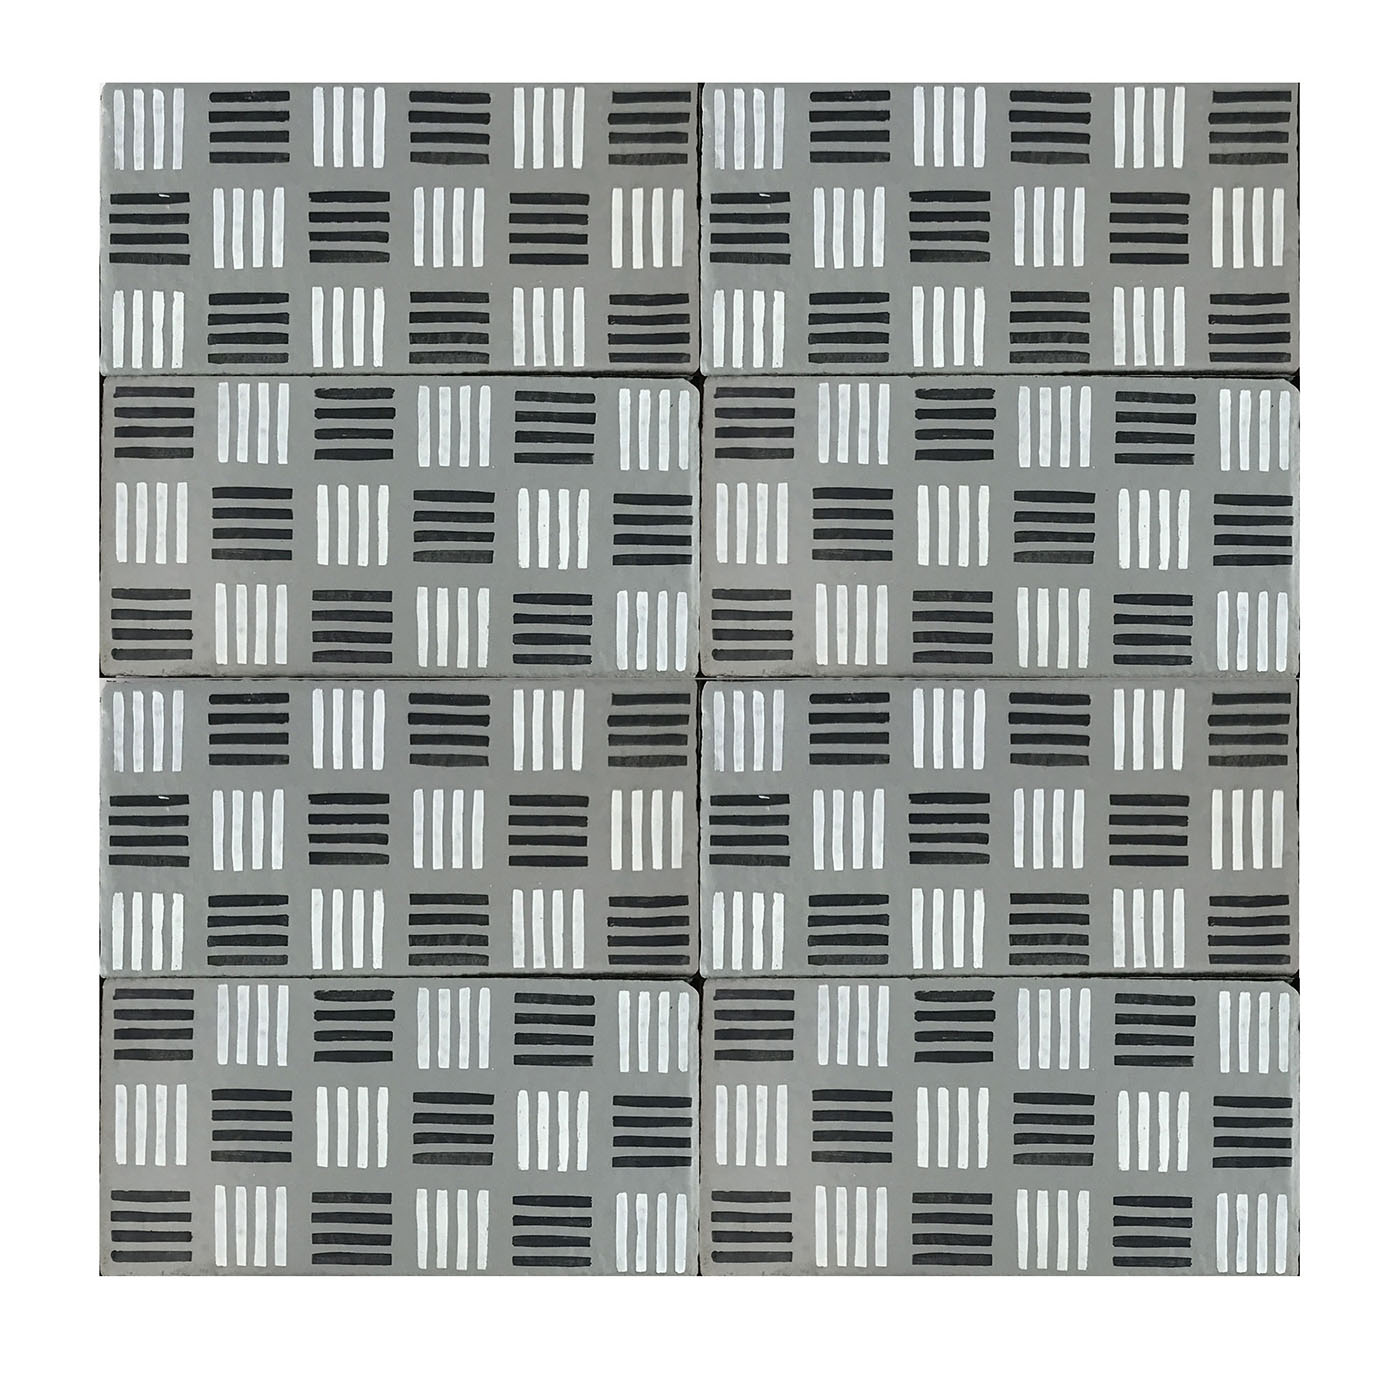 Daamè Set of 50 Rectangular Gray Tiles #2 - Main view